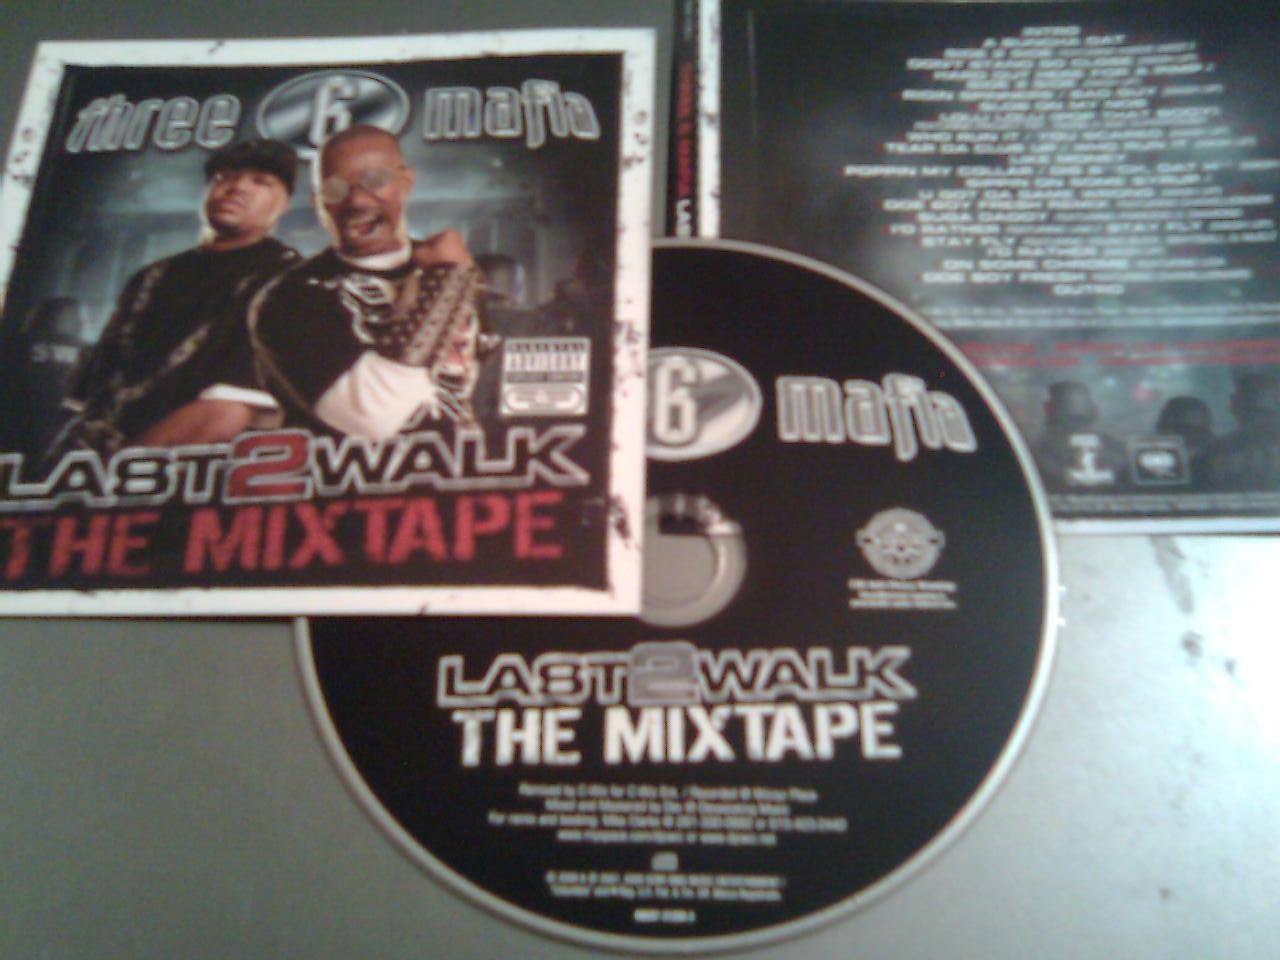 [00-three_6_mafia-last_2_walk_(the_mixtape)-2008-pic.jpg]